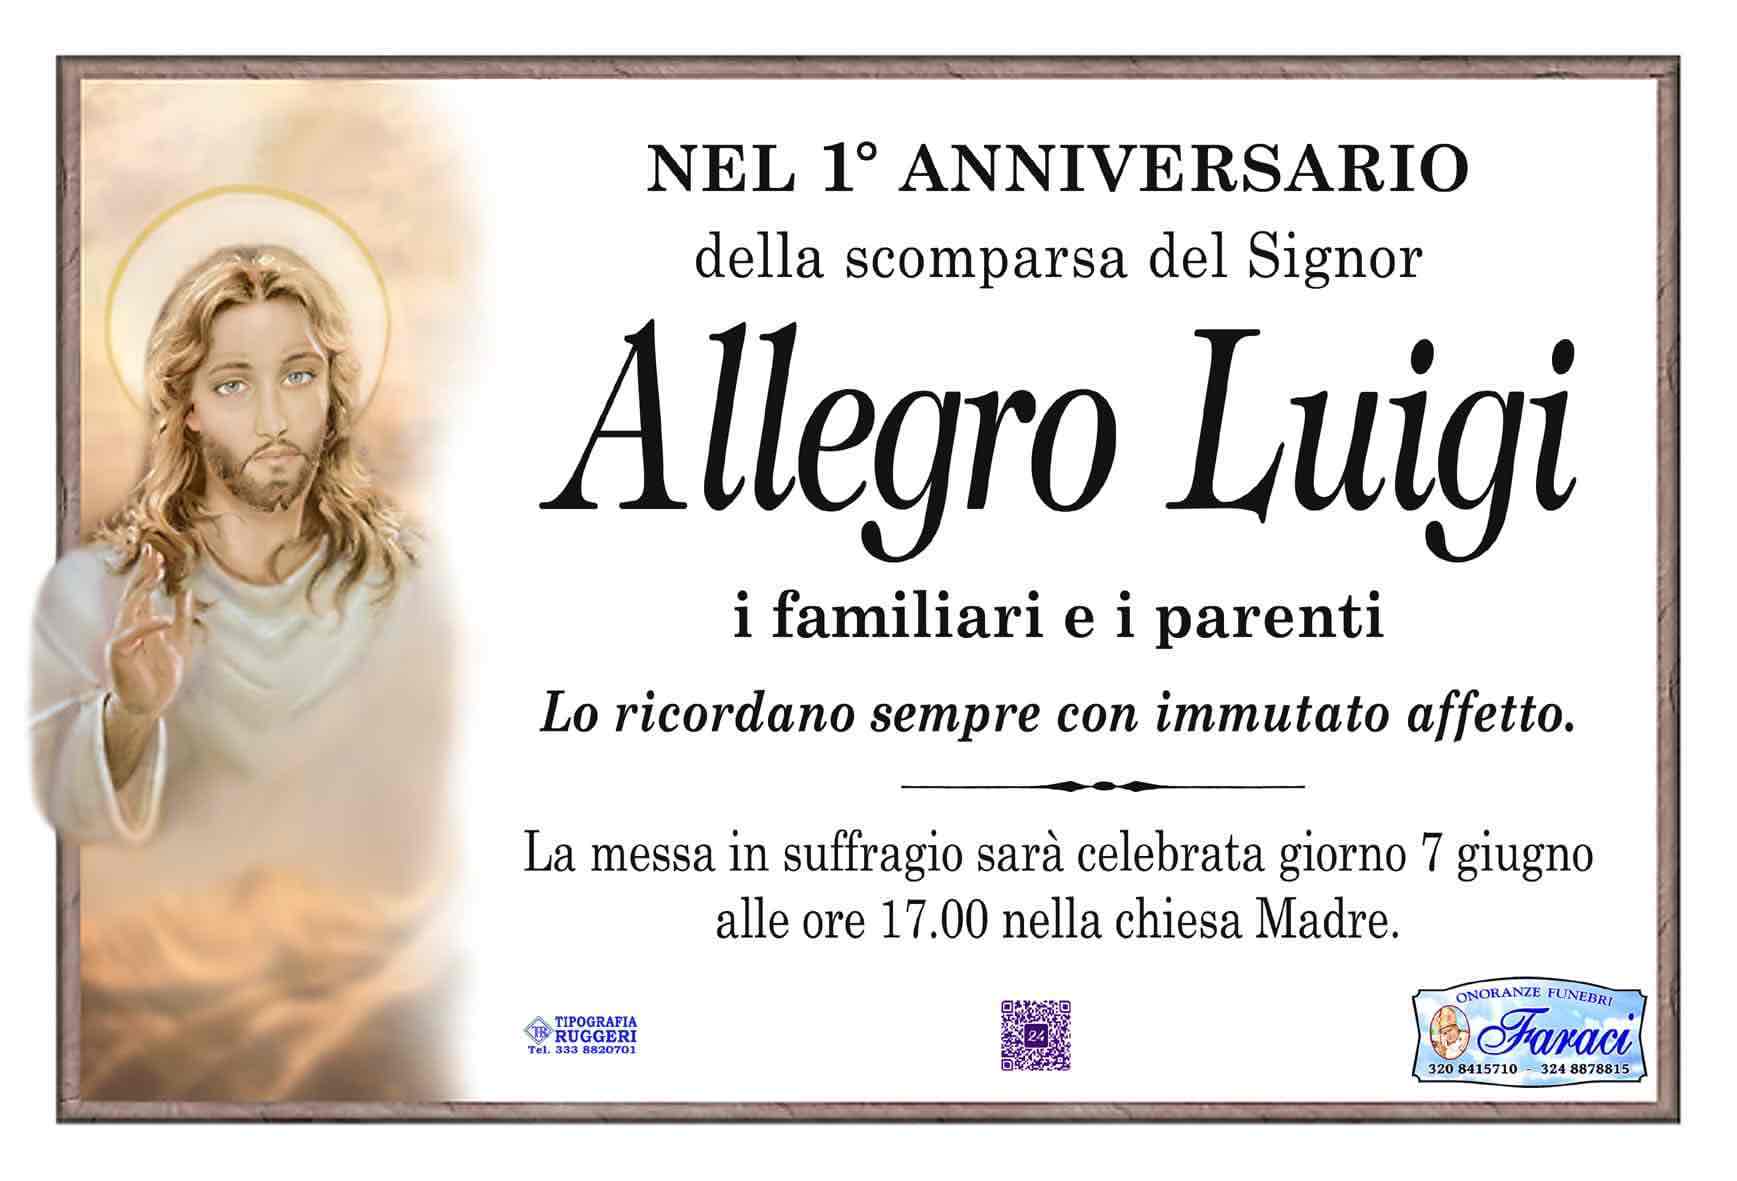 Luigi Allegro